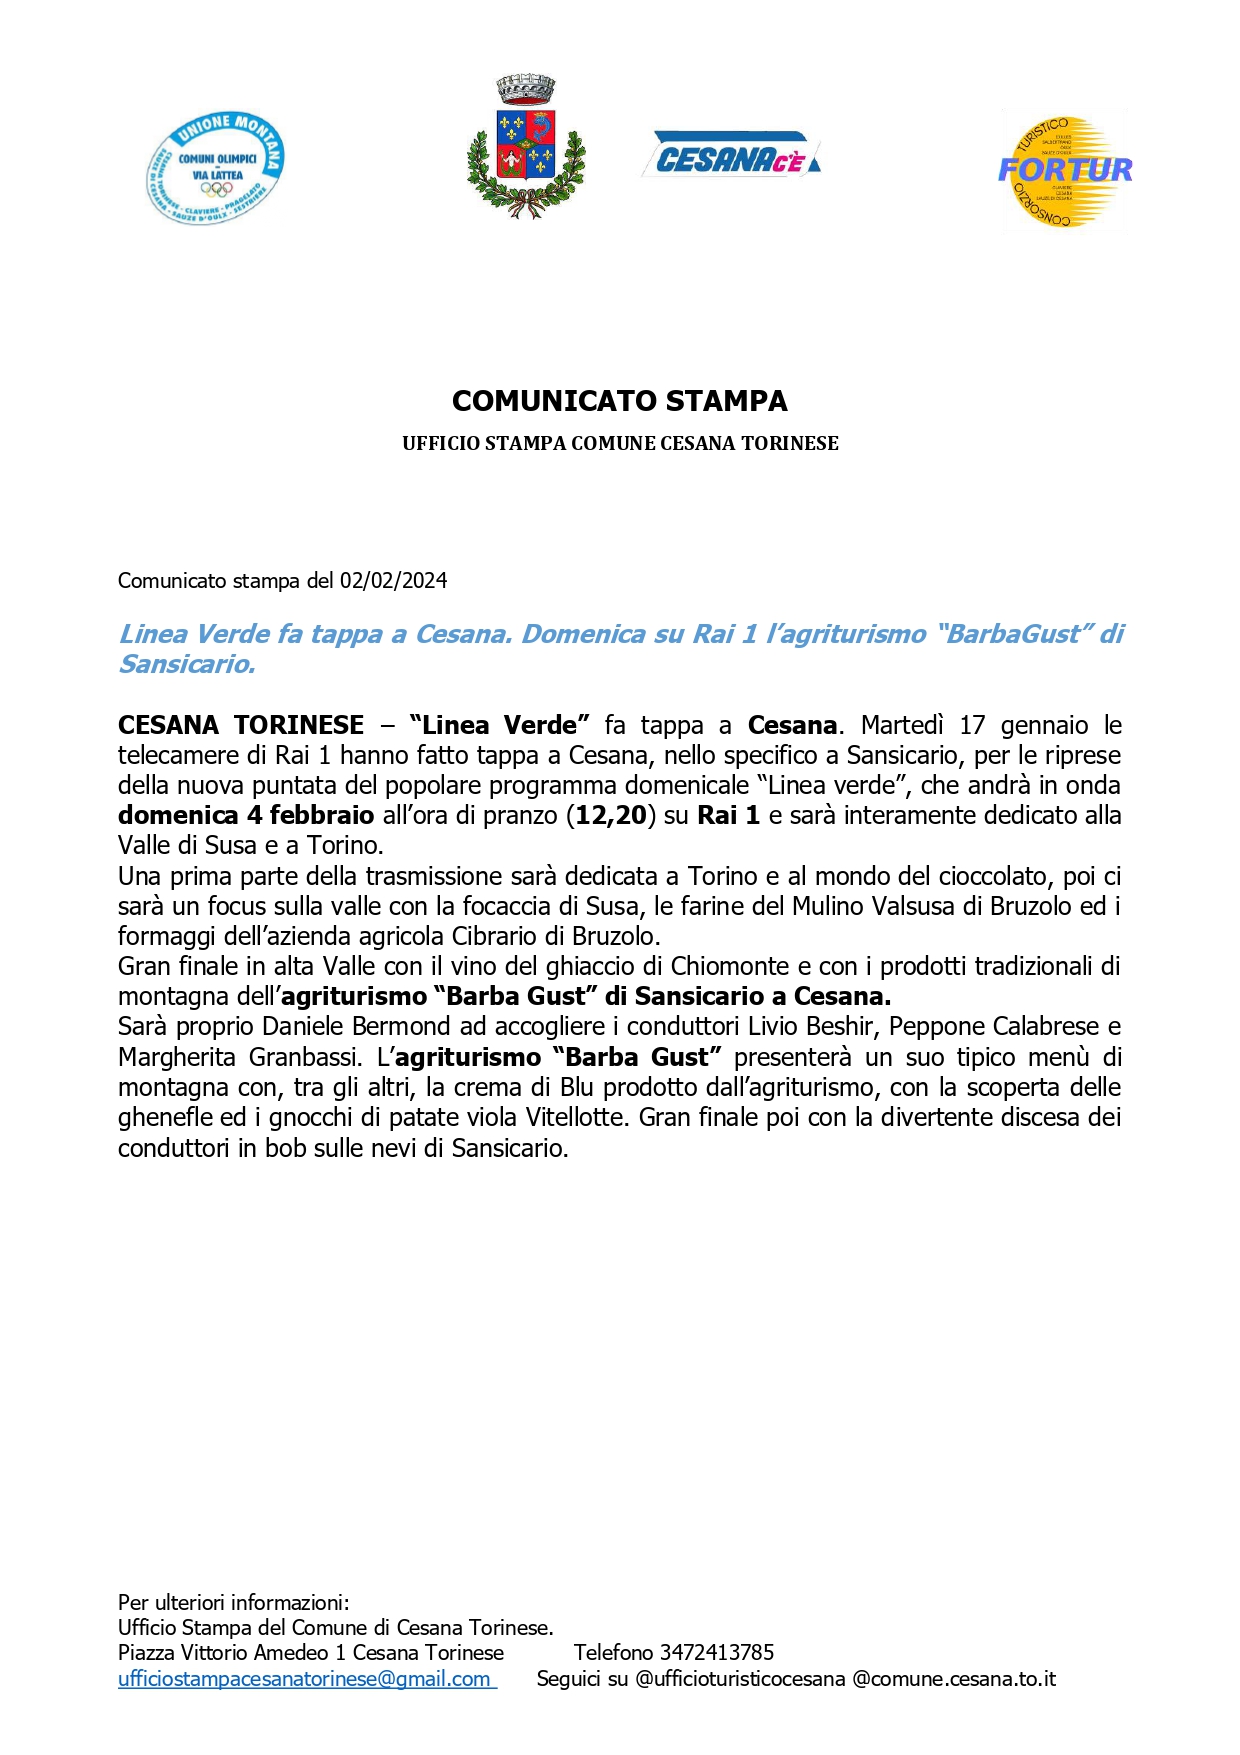 Comunicato Stampa del 02/02/2024 – Linea Verde fa tappa a Cesana.